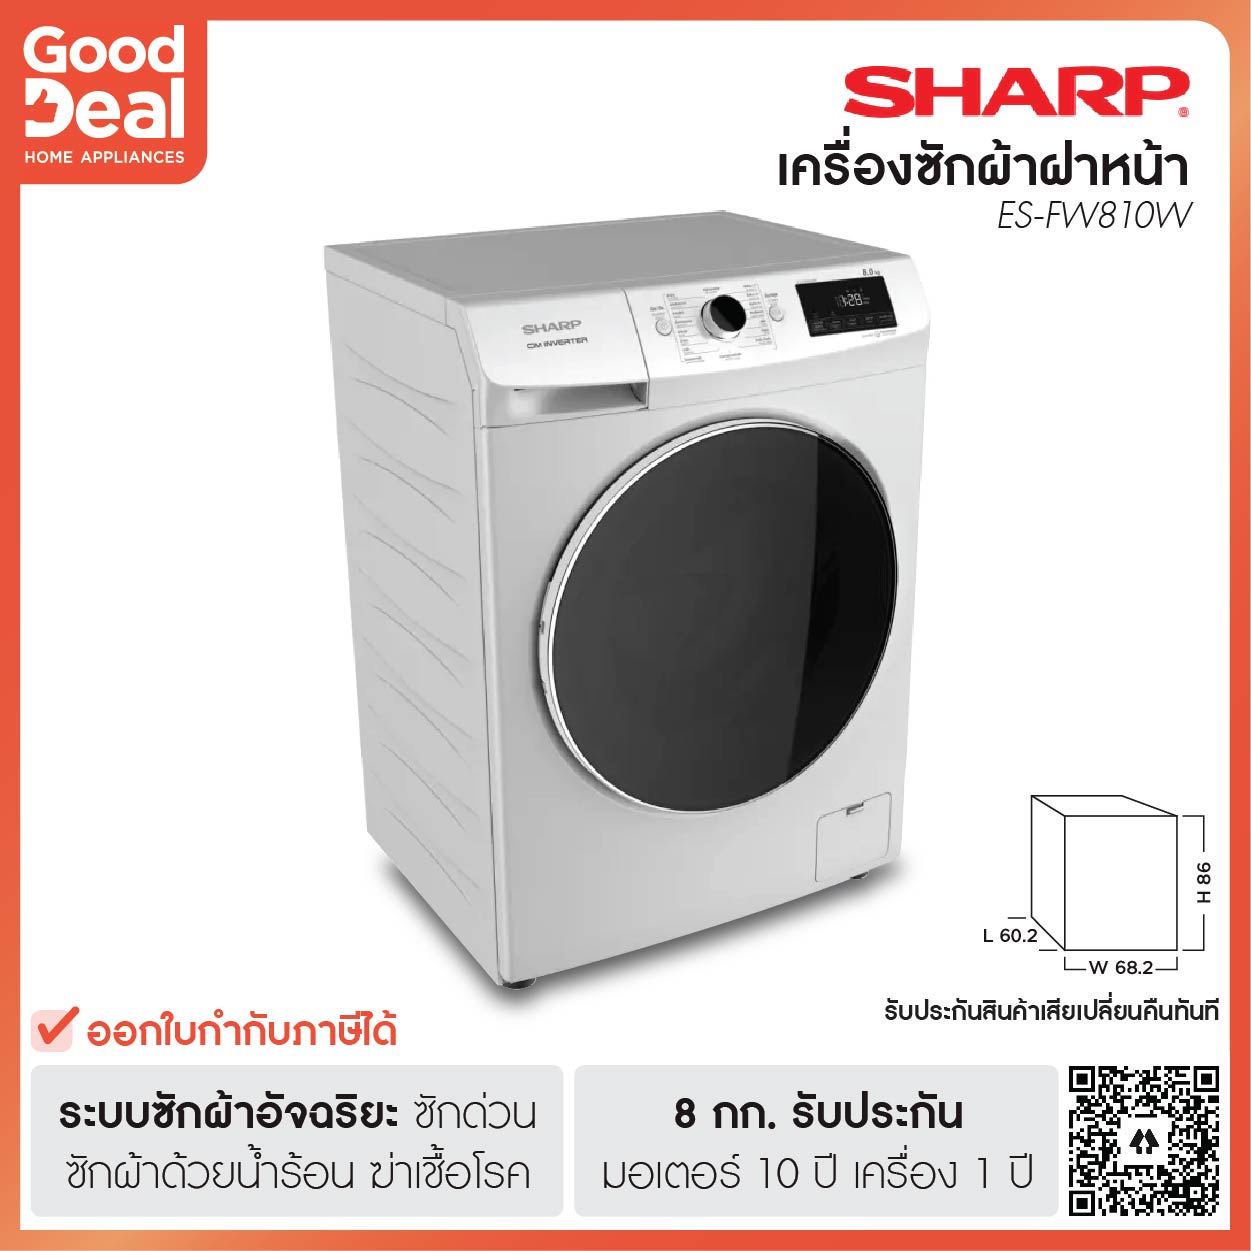 SHARP เครื่องซักผ้าฝาหน้า 8 กก. รุ่น ES-FW810W